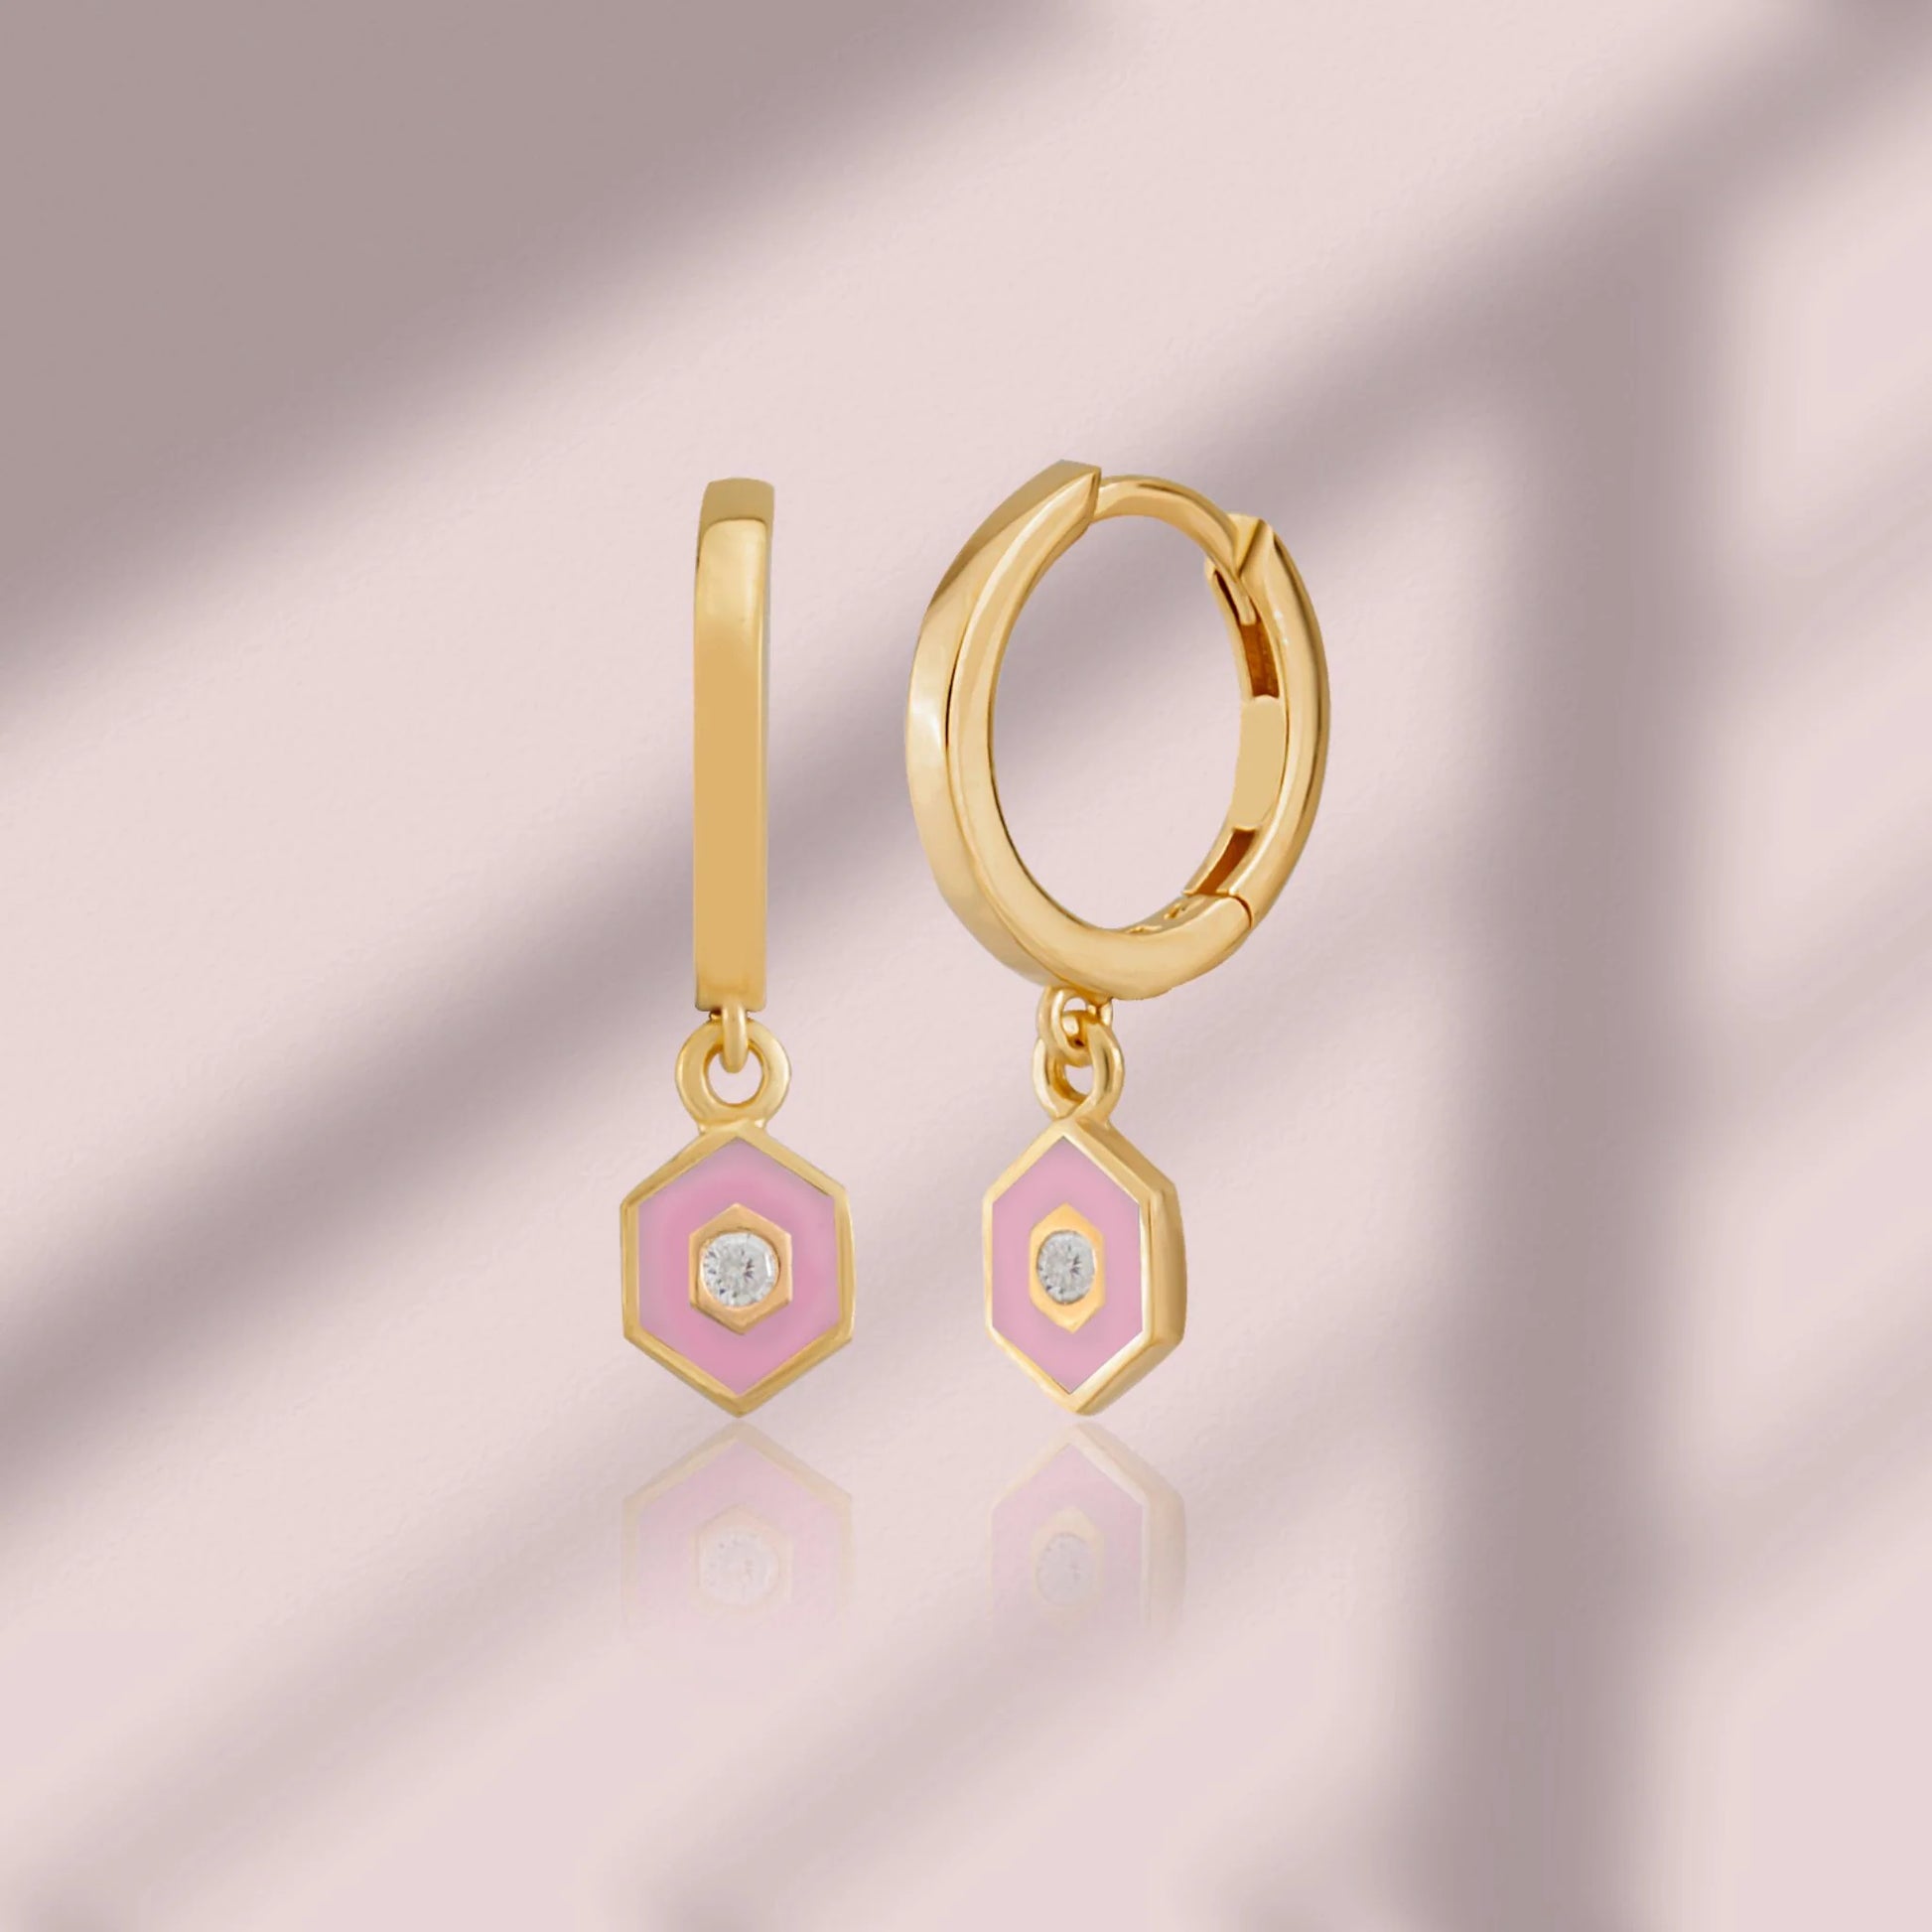 Minimalist Vivid Hoop Earrings earrings LUNARITY GARAGE Pink  